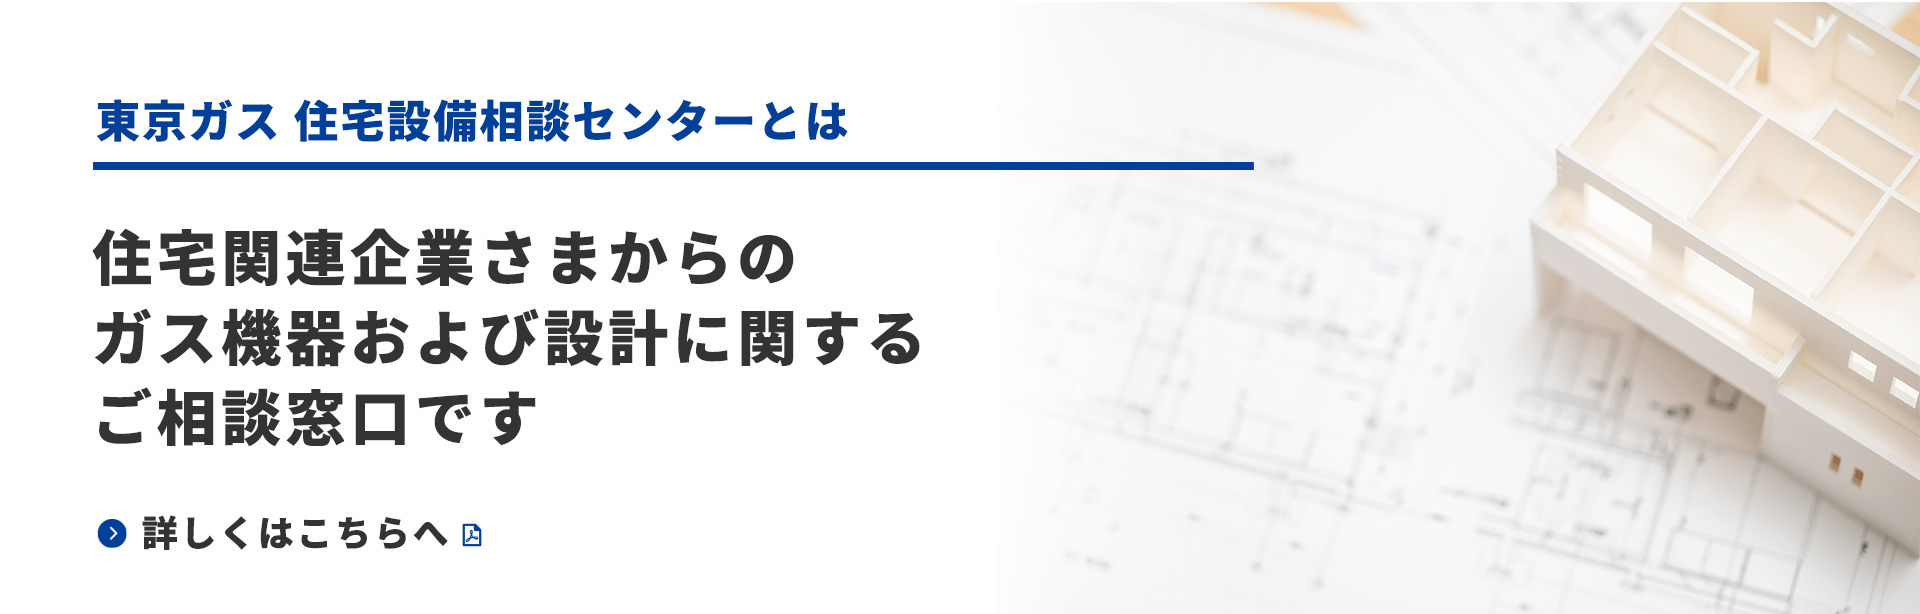 東京ガス住宅設備相談センターとは　住宅関連企業さまからのガス機器および設計に関するご相談窓口です　詳しくはこちらへ